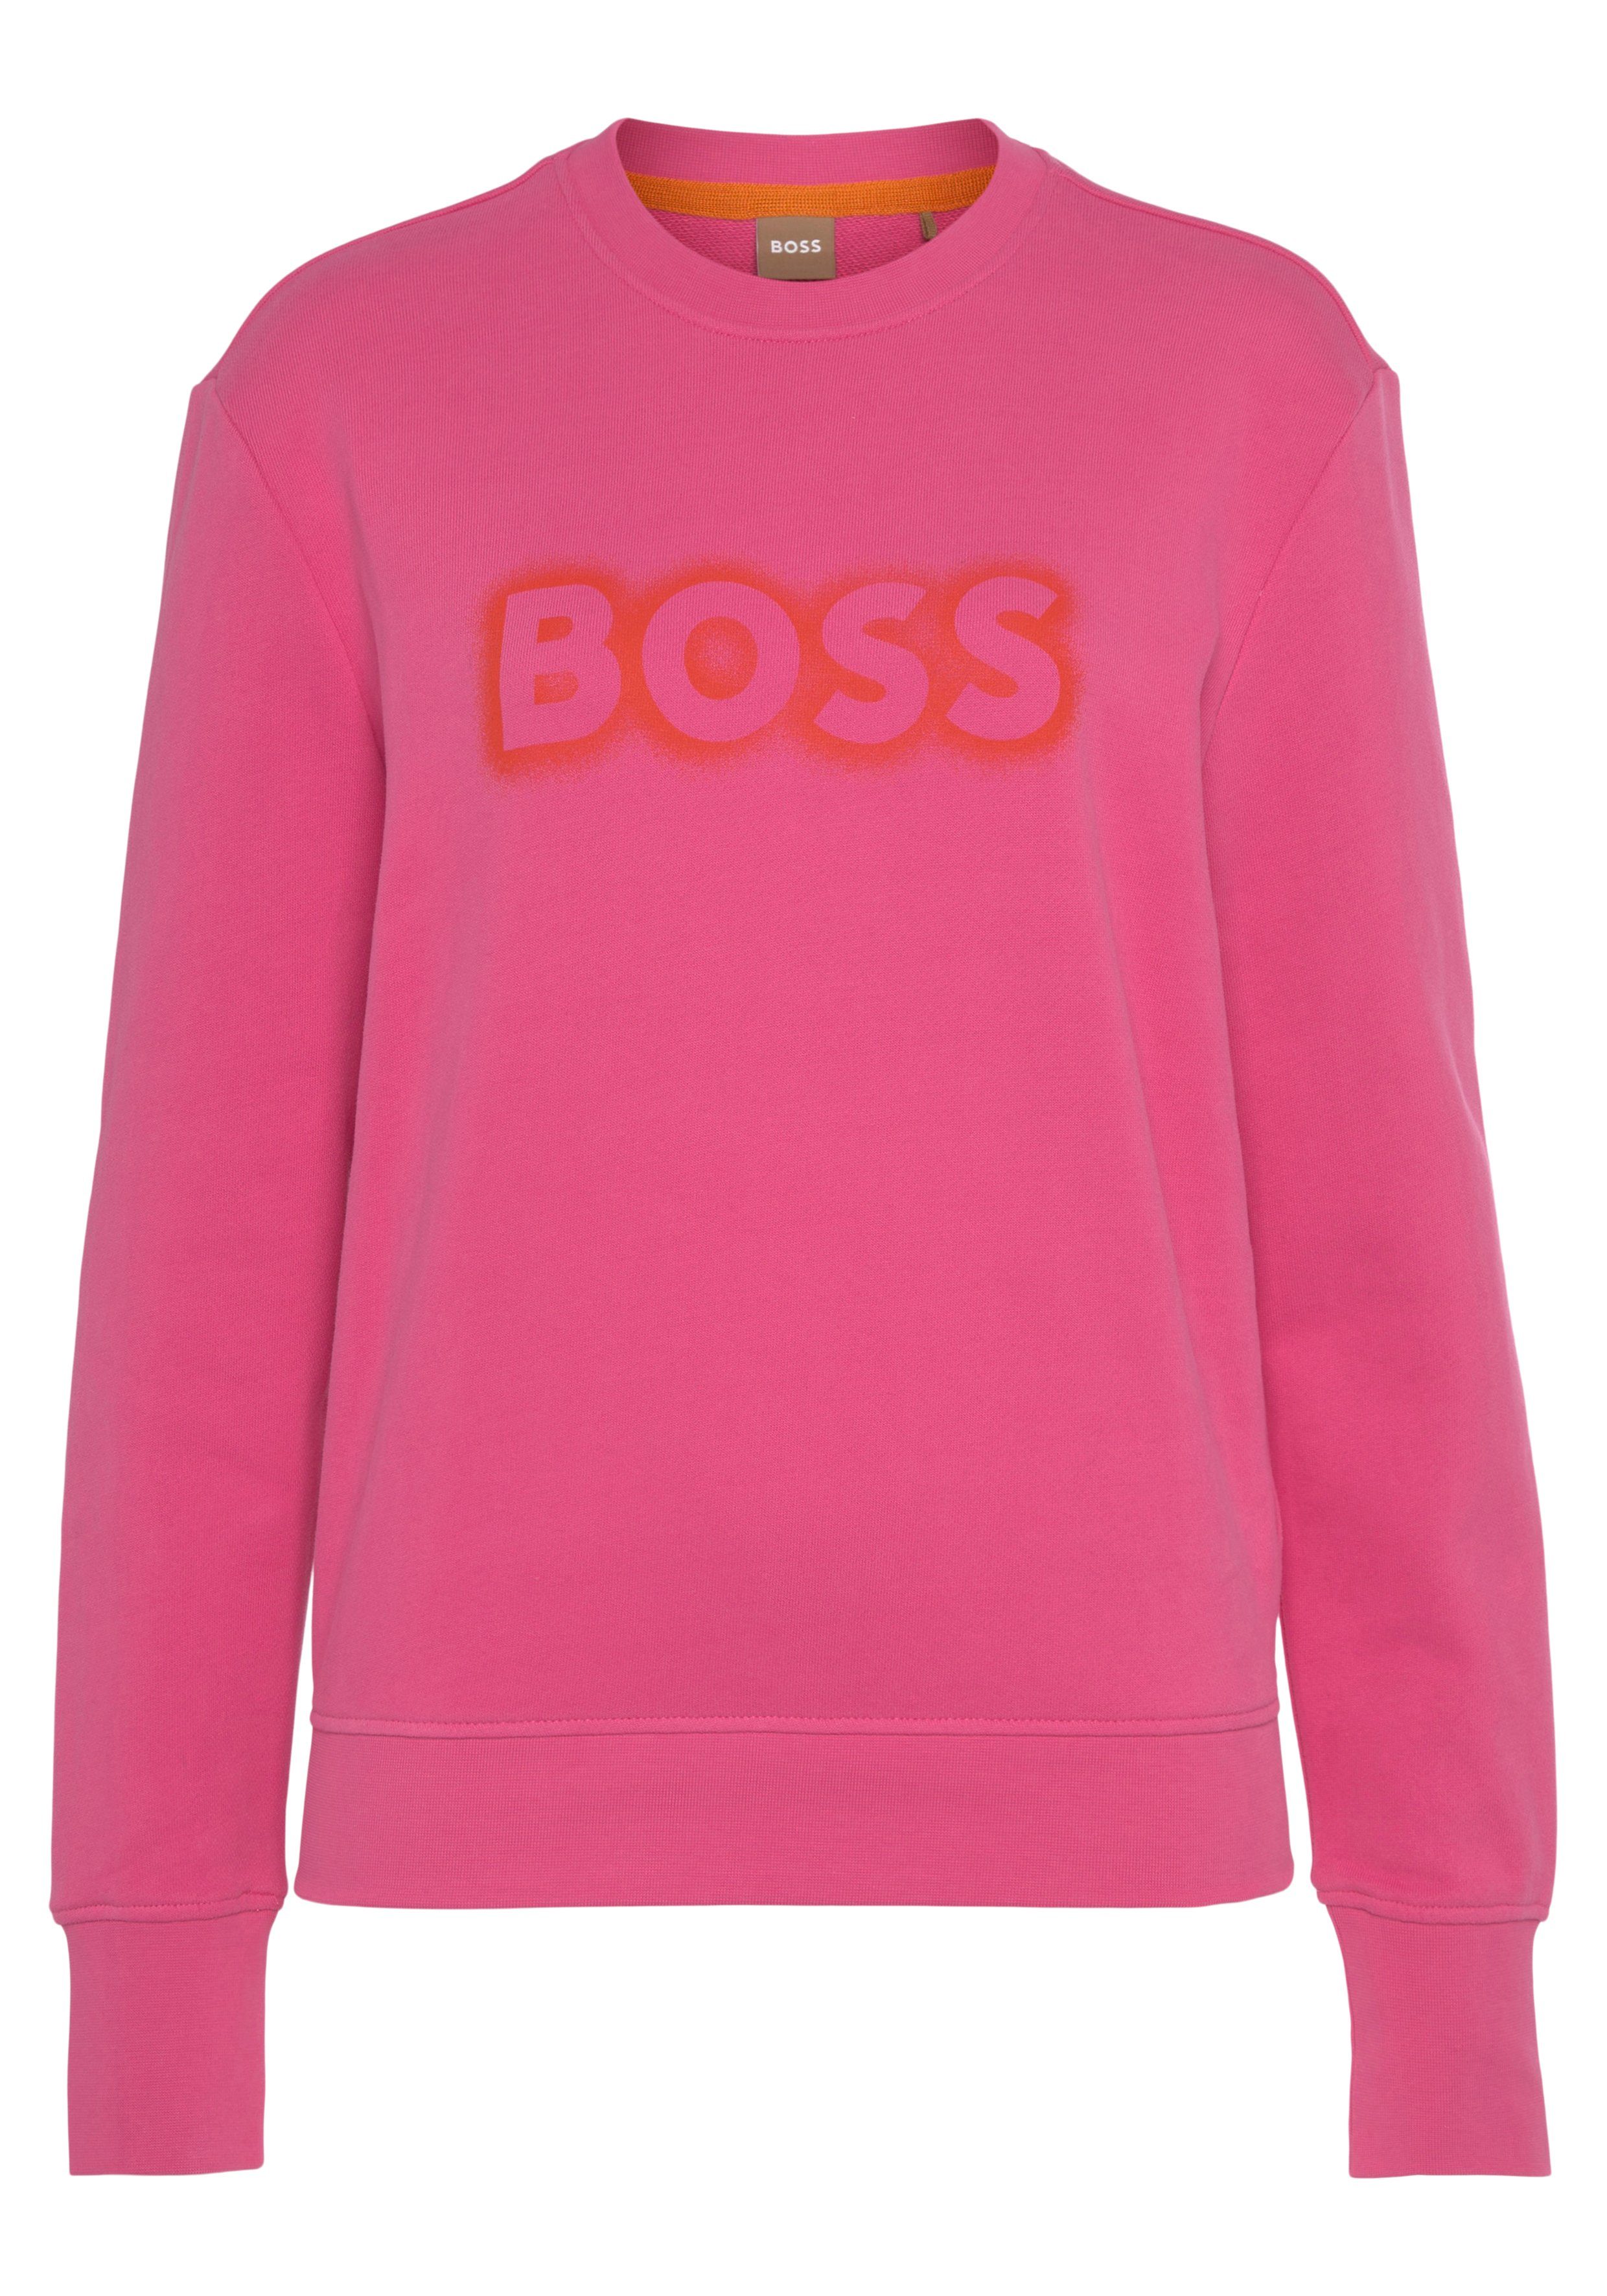 Orangene Hugo Boss Pullover für Damen online kaufen | OTTO